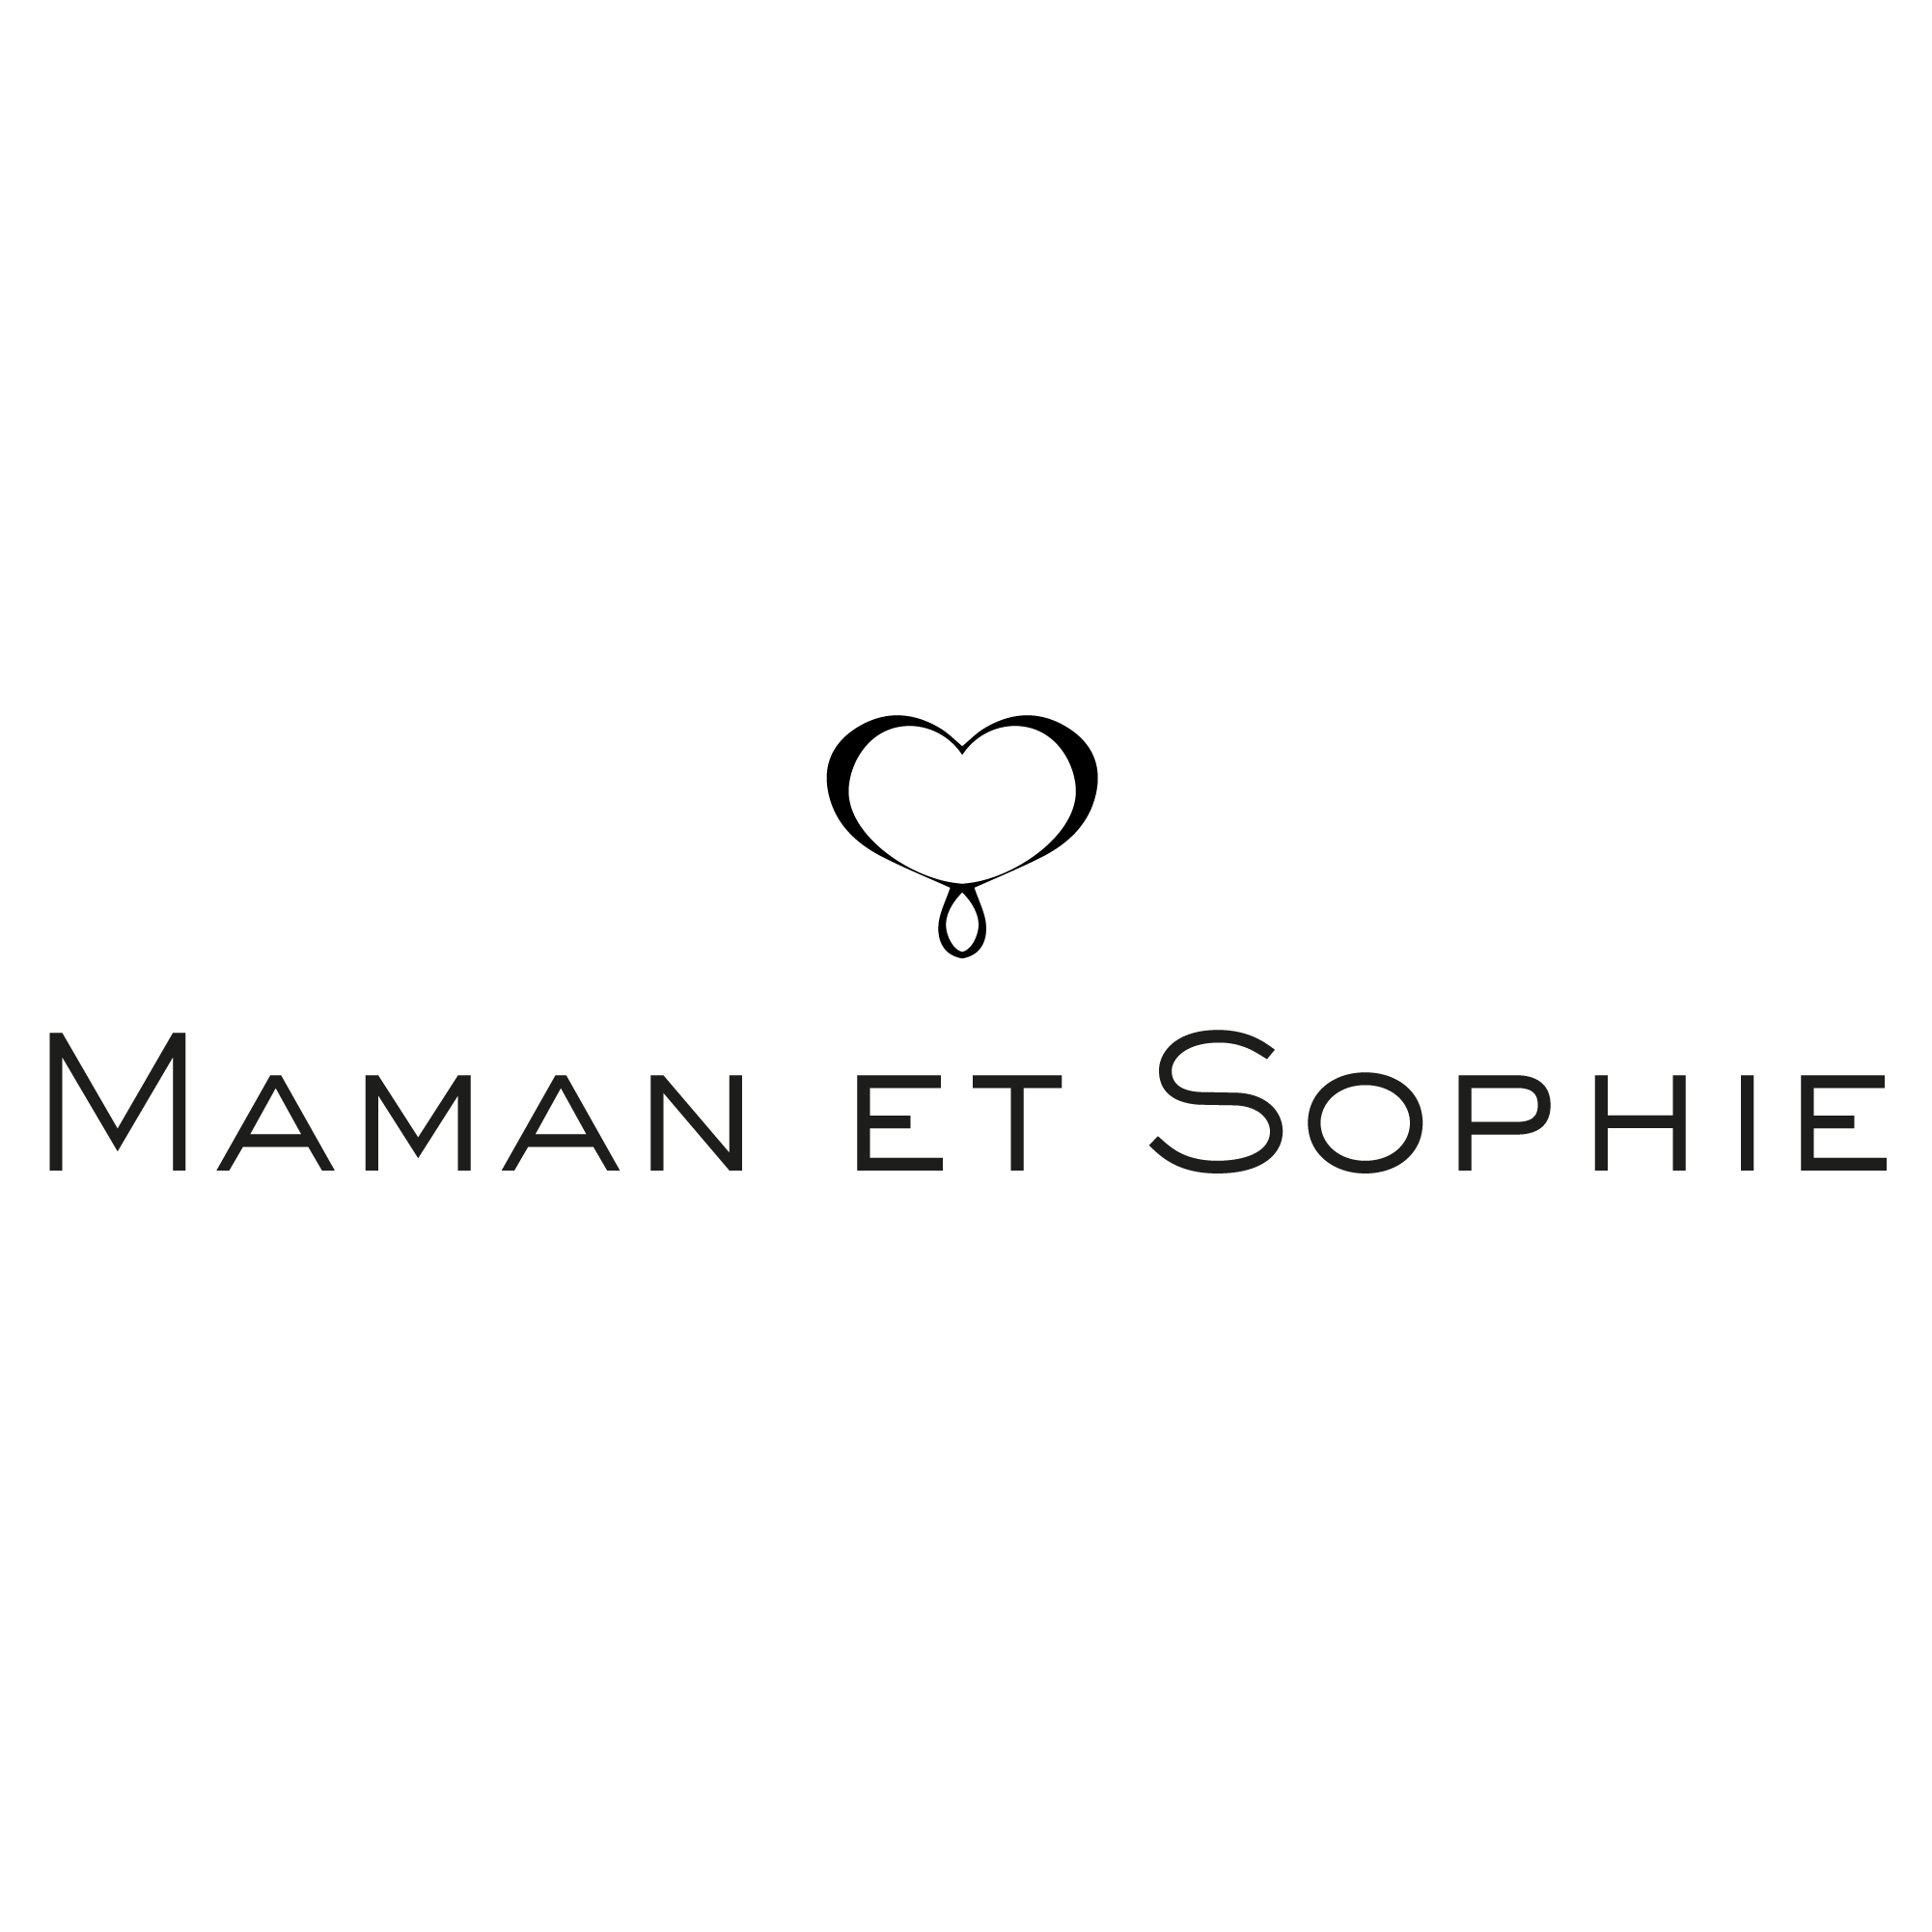 MAMAN ET SOPHIE